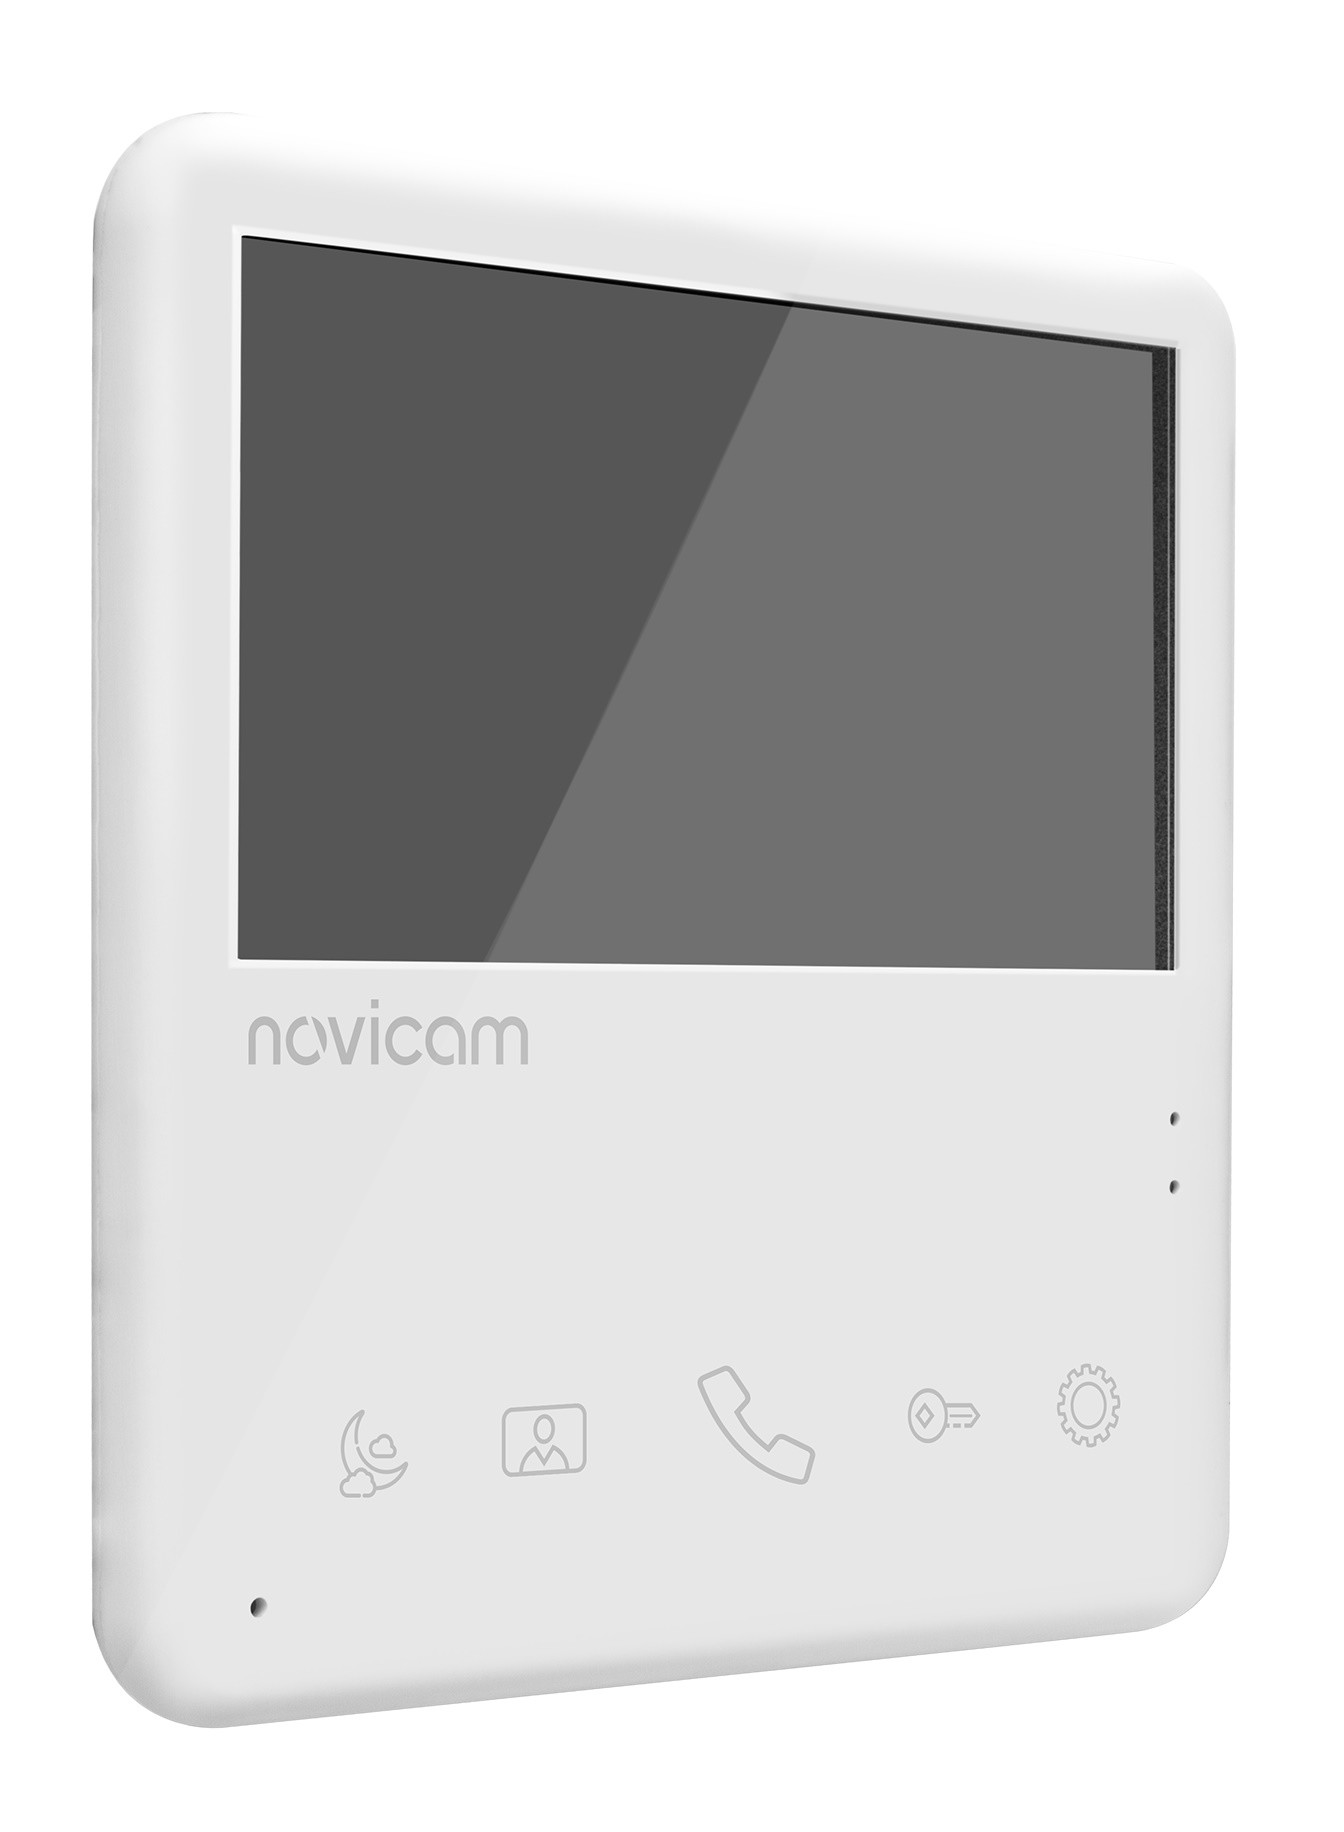 UNIT 4 KIT Novicam (ver.4901) комплект видеодомофона 4,3'' c вызывной панелью